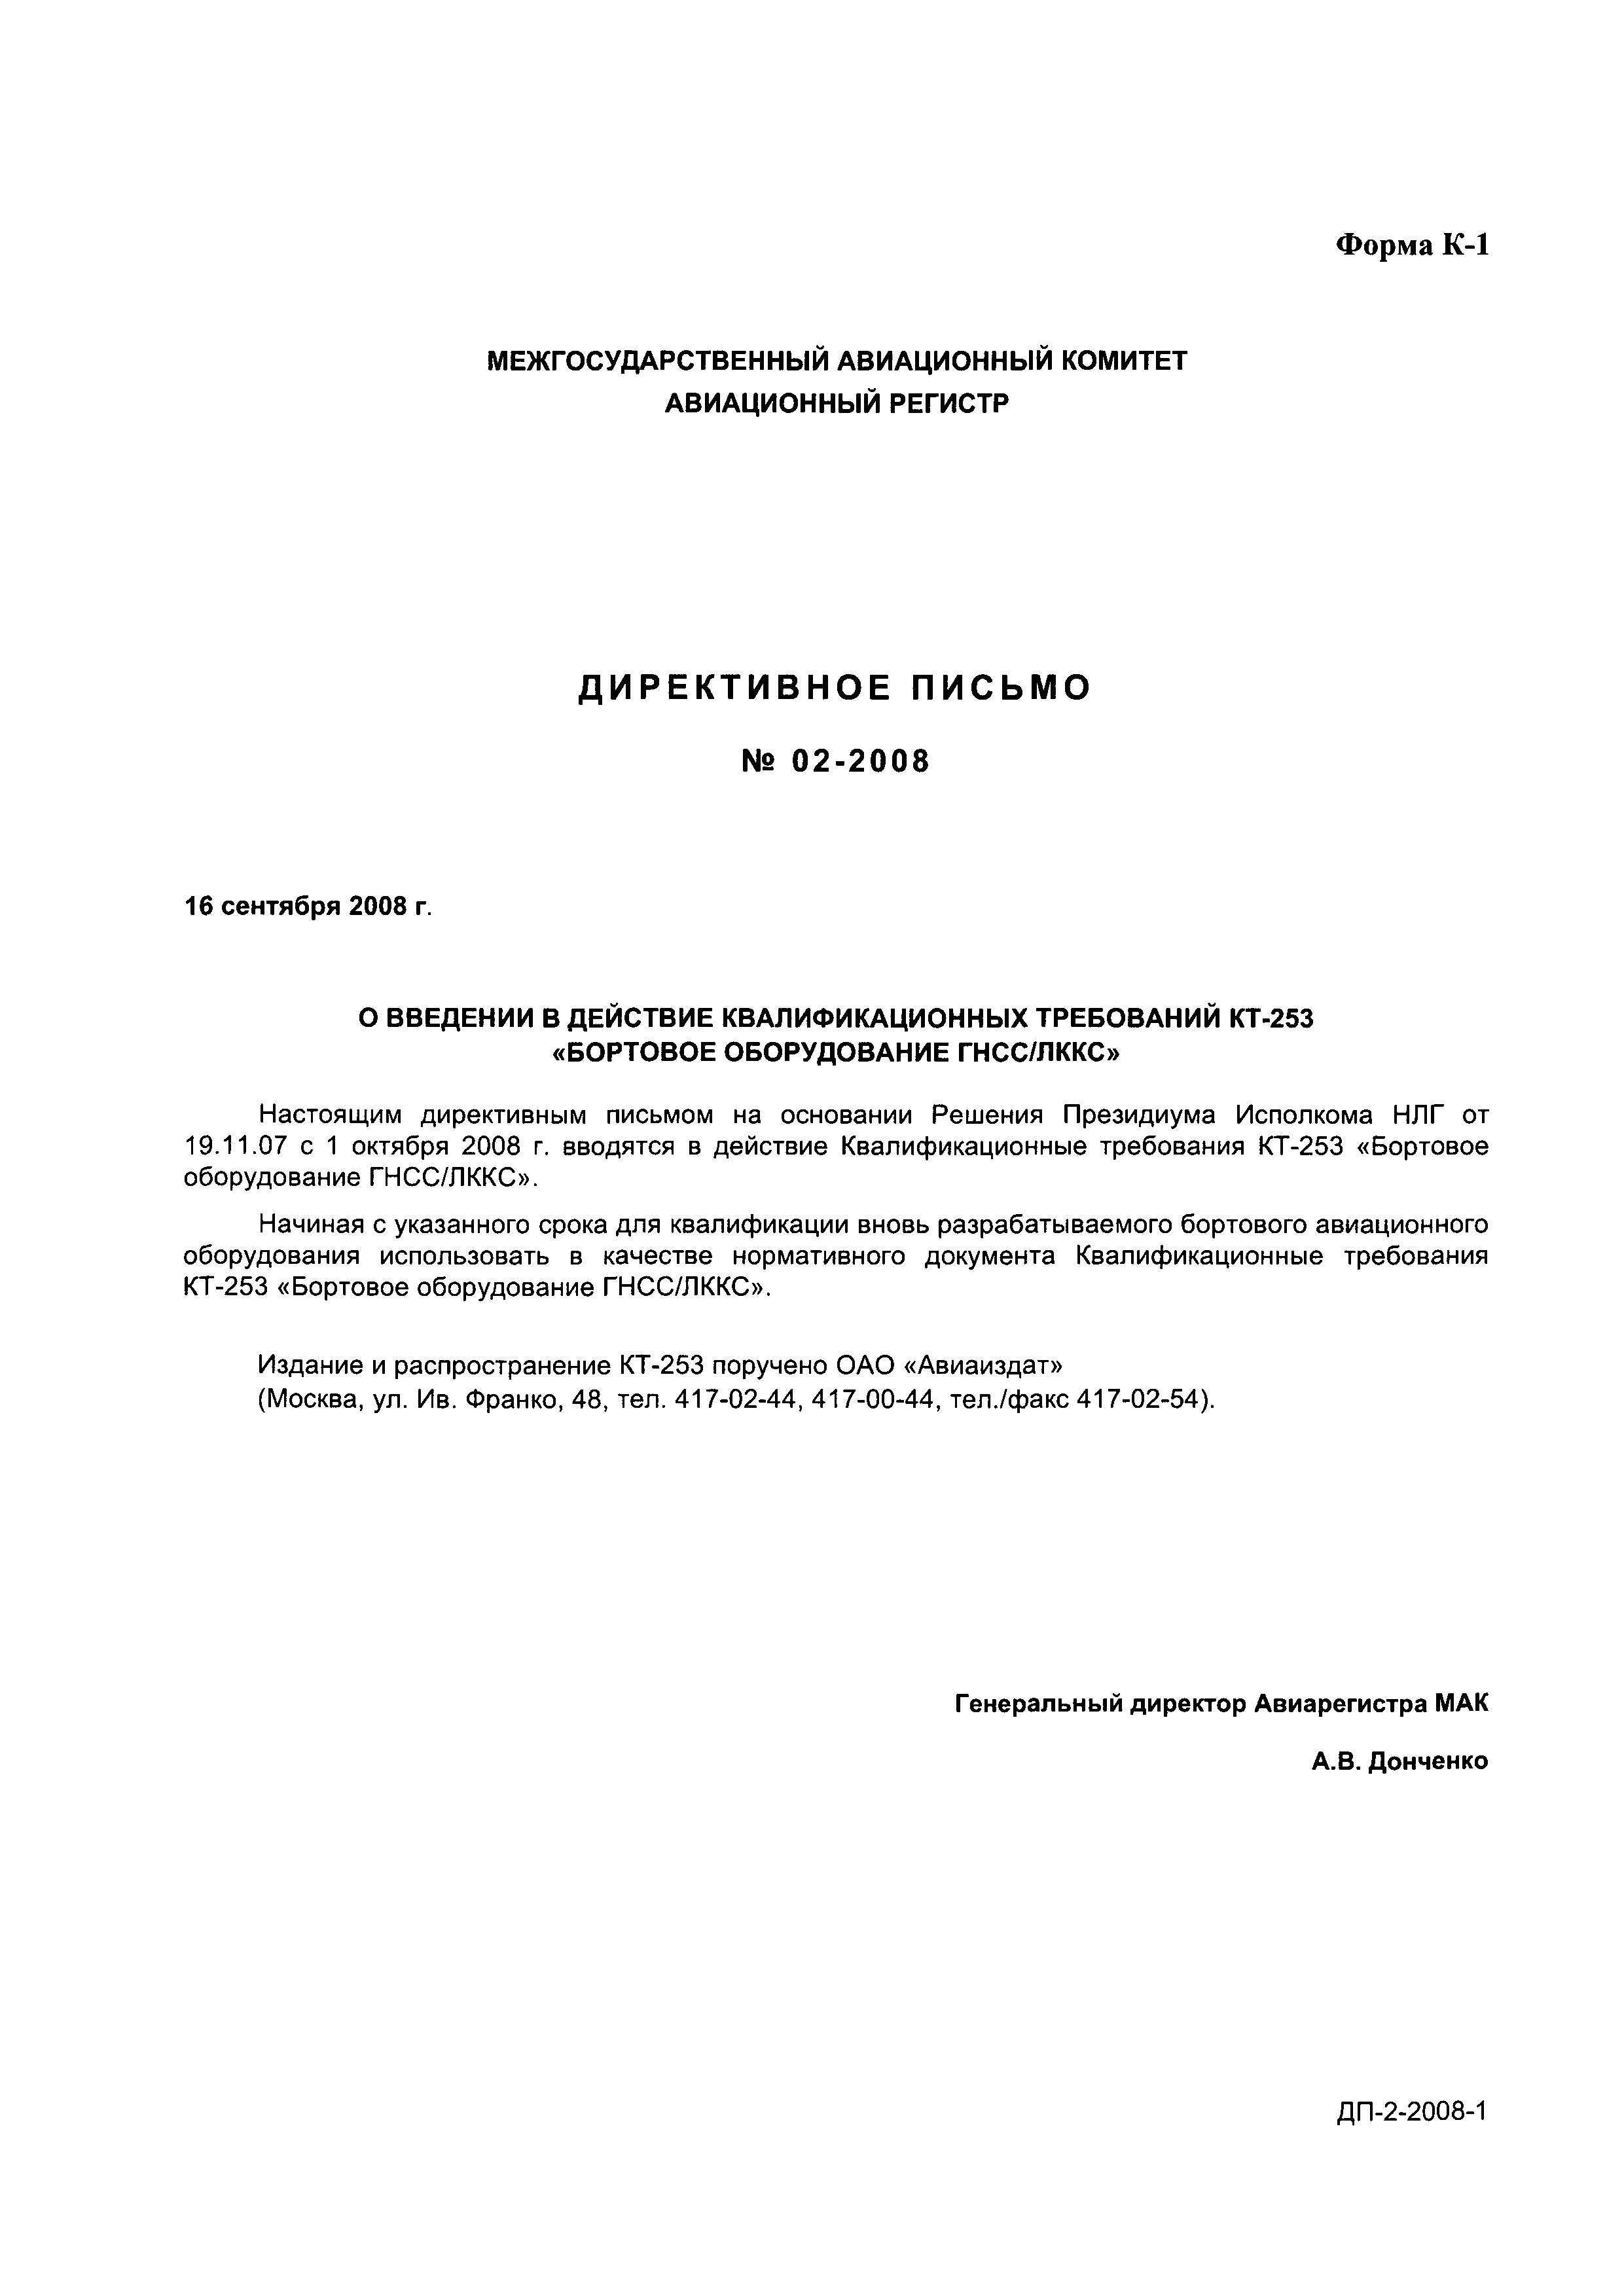 Директивное письмо 02-2008